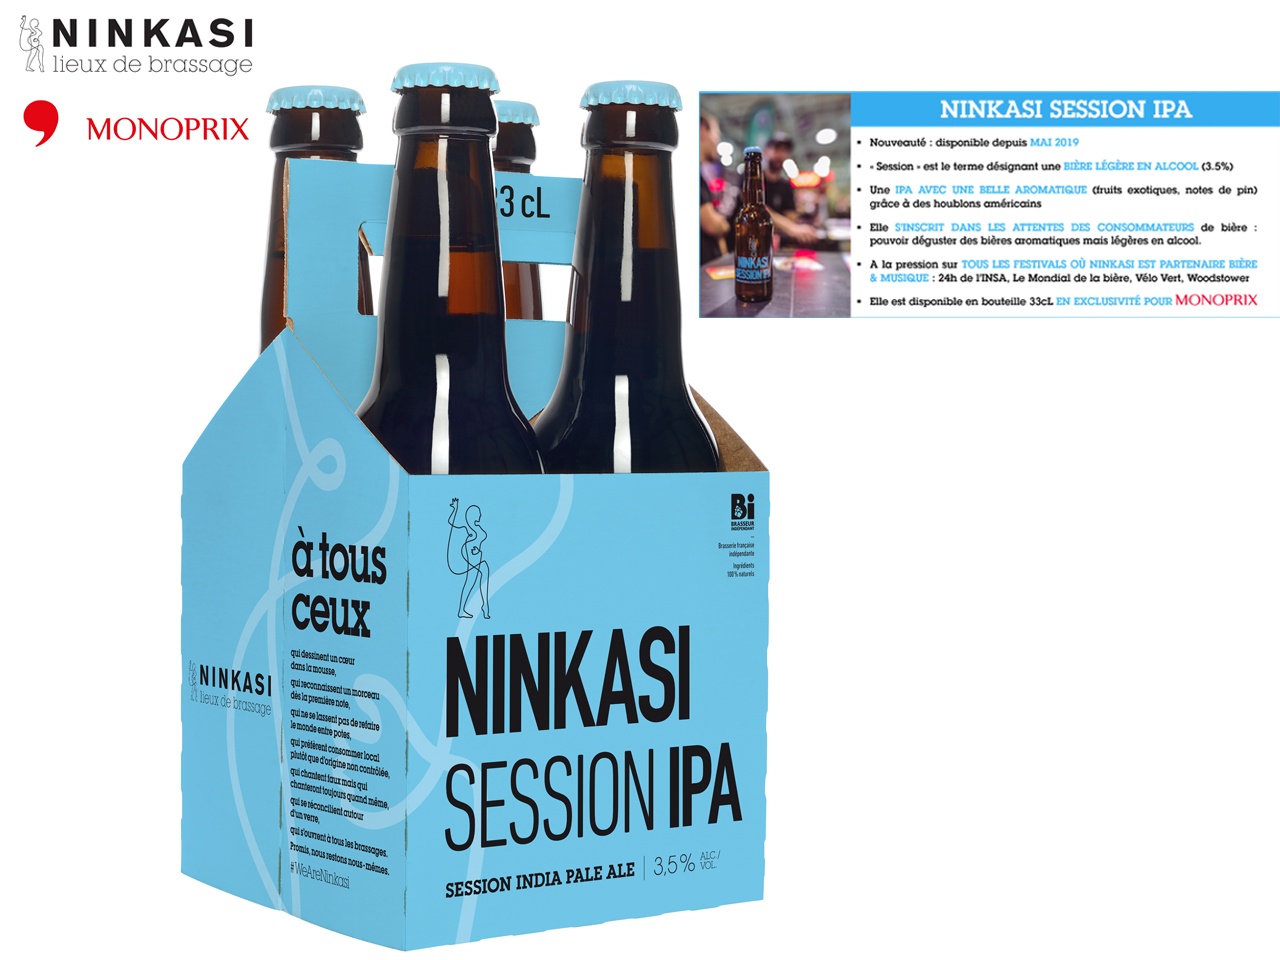 Les bières Ninkasi arrivent dans les rayons des Monoprix